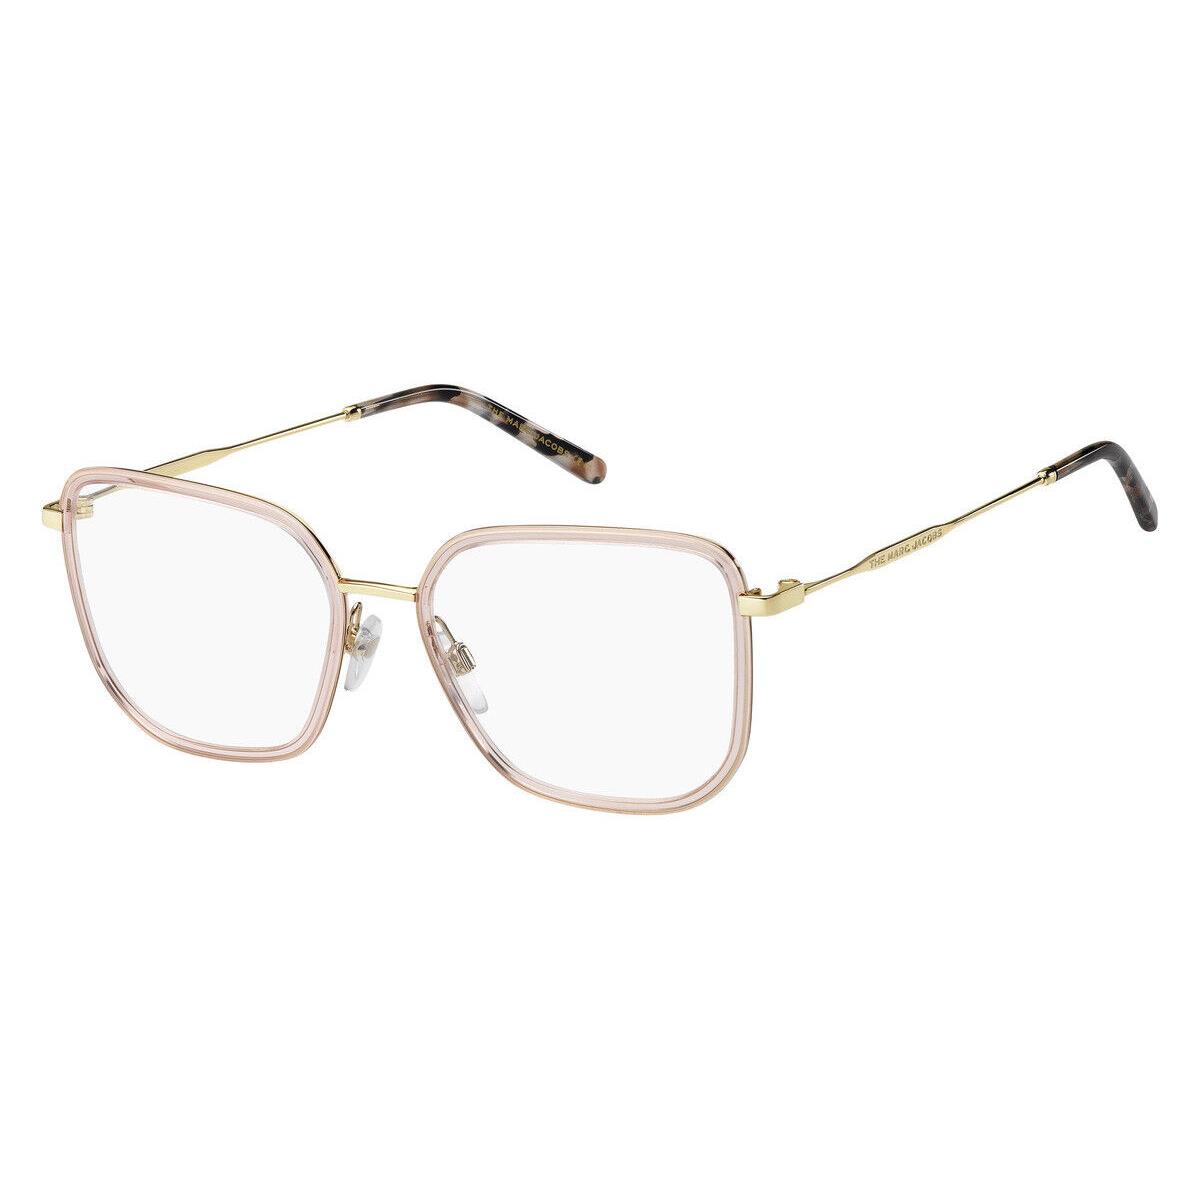 Marc Jacobs 537 Eyeglasses Women 0FWM Square 53mm